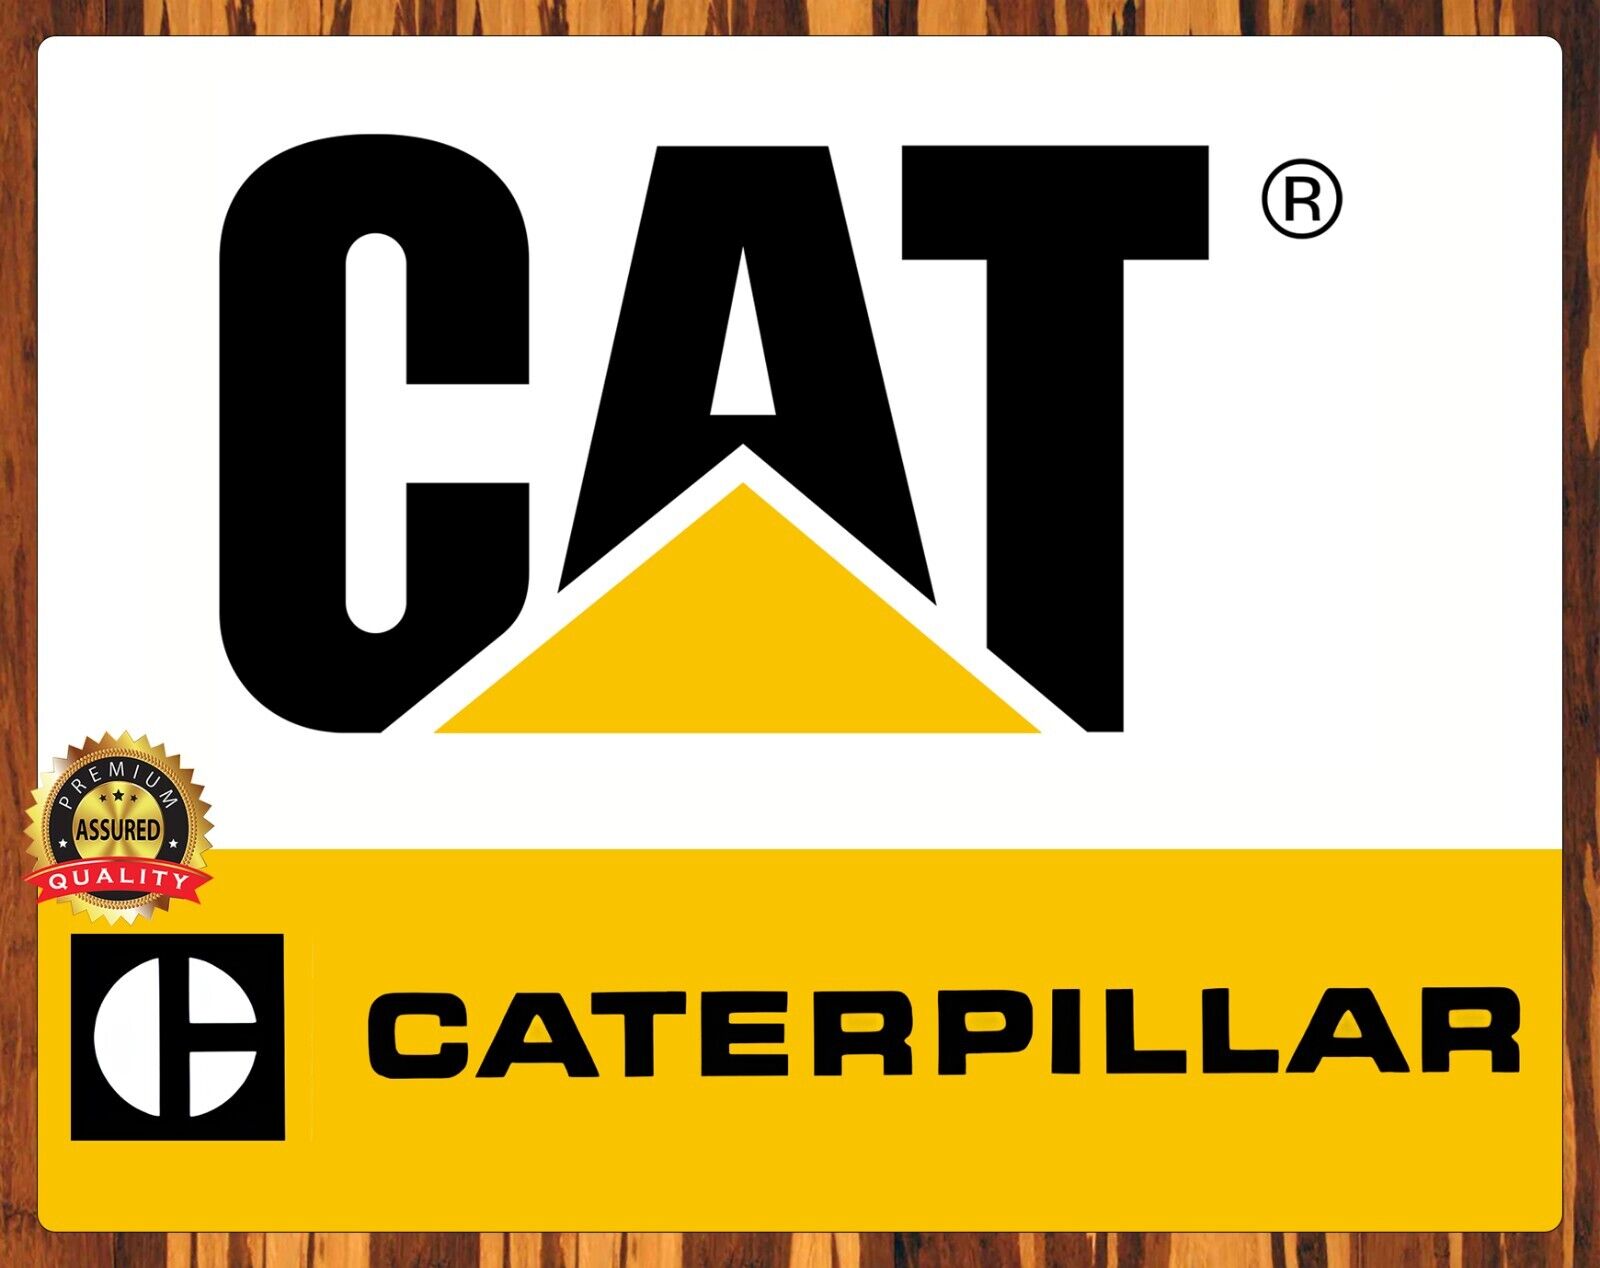 Cat - Caterpillar - Metal Sign 11 x 14